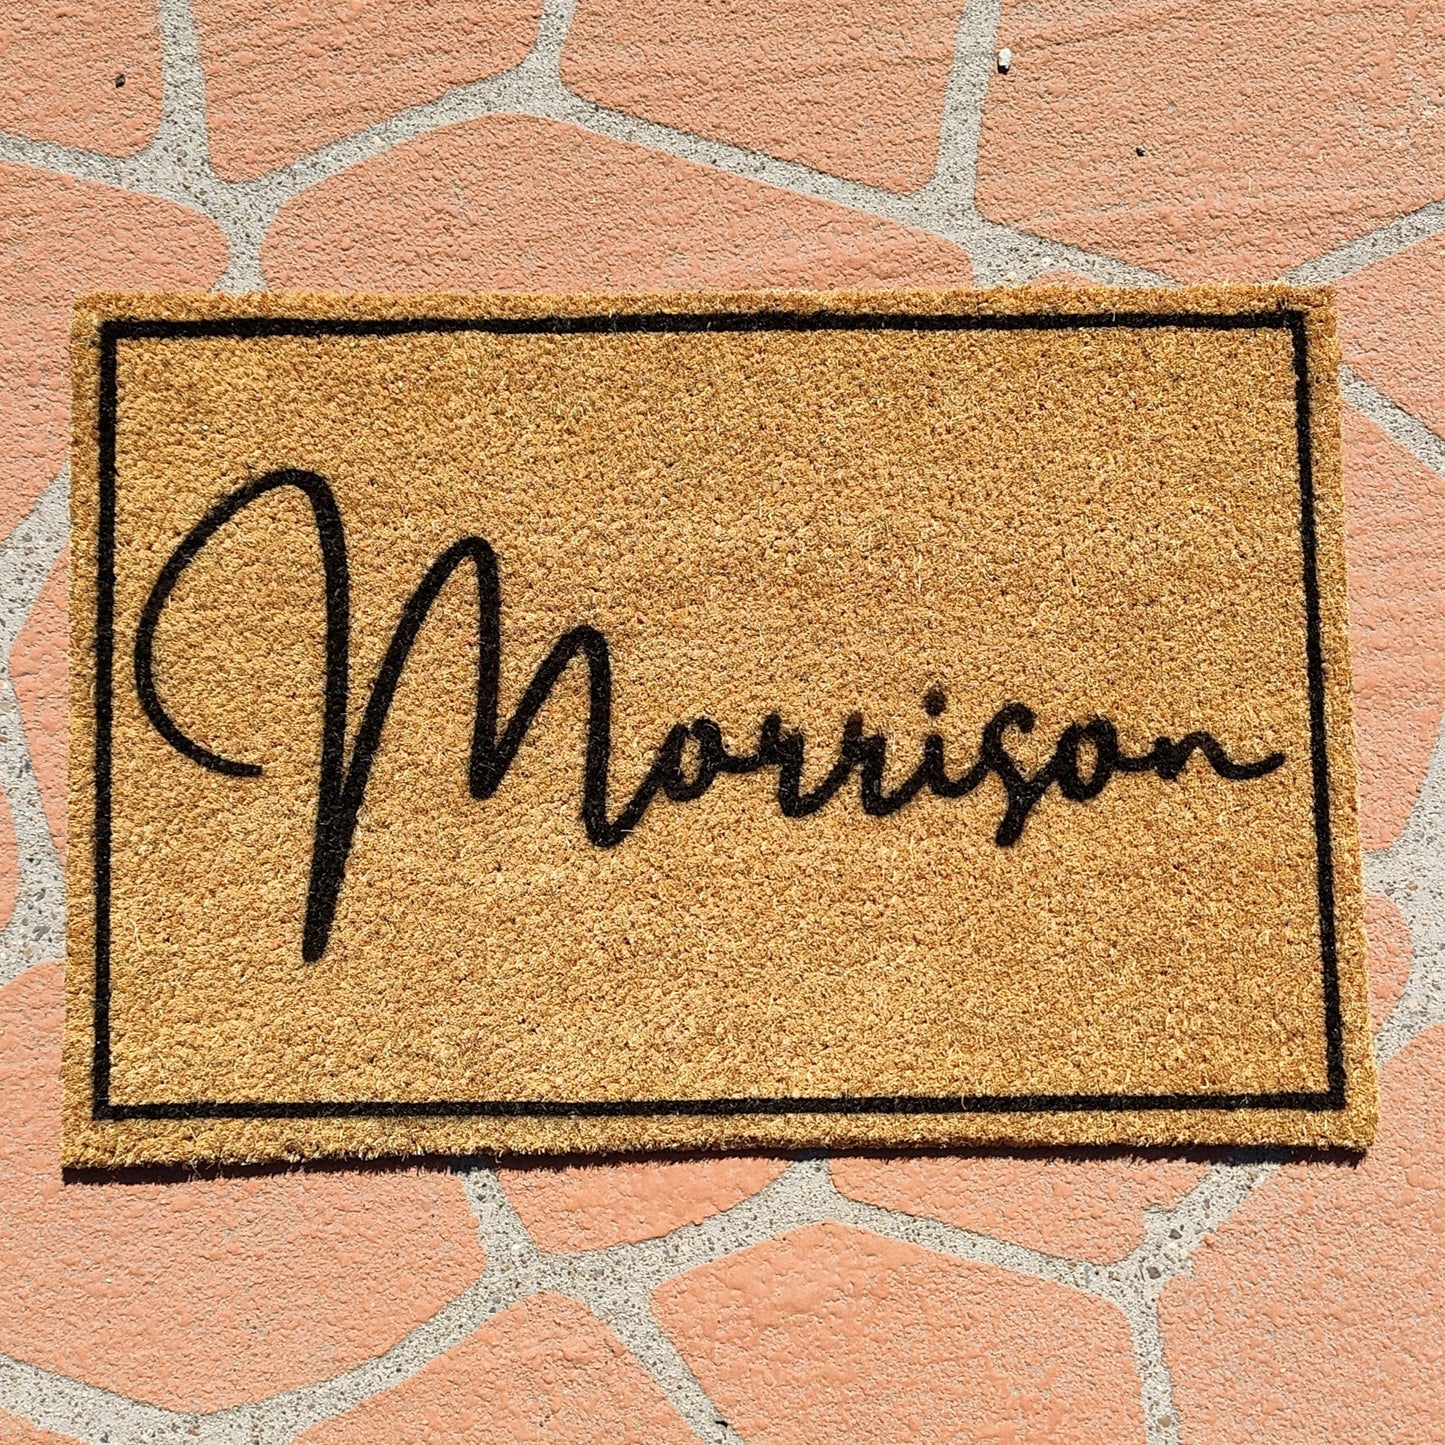 Surname with border Personalised doormat - Personalised Doormat Australia